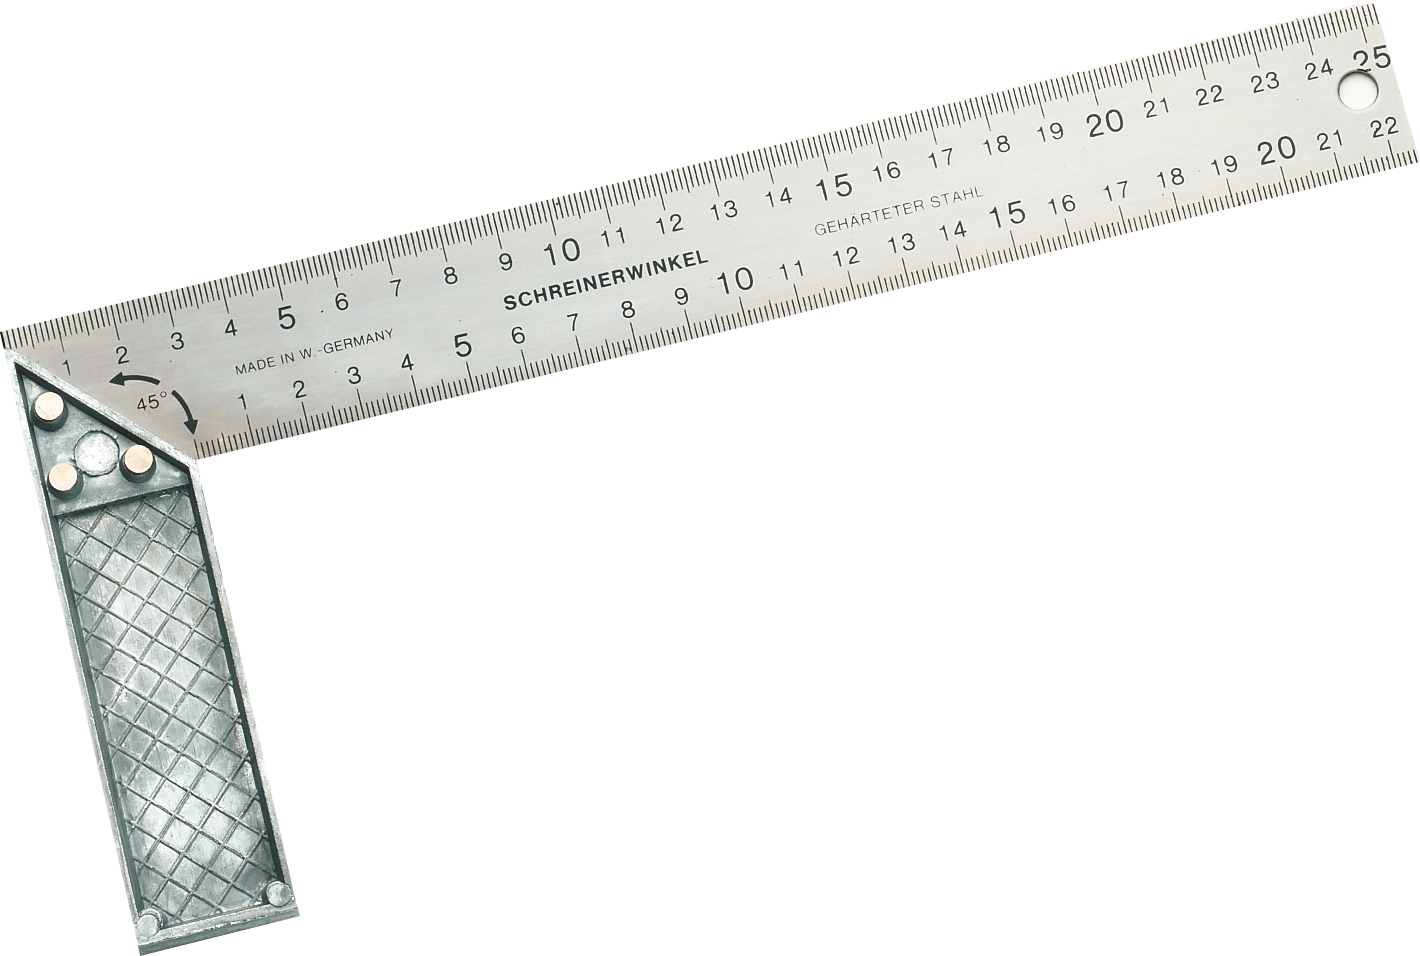 TRIUSO Tischlerwinkel Druckguß 200 mm mit Gehrung Blatt 32 mm breit